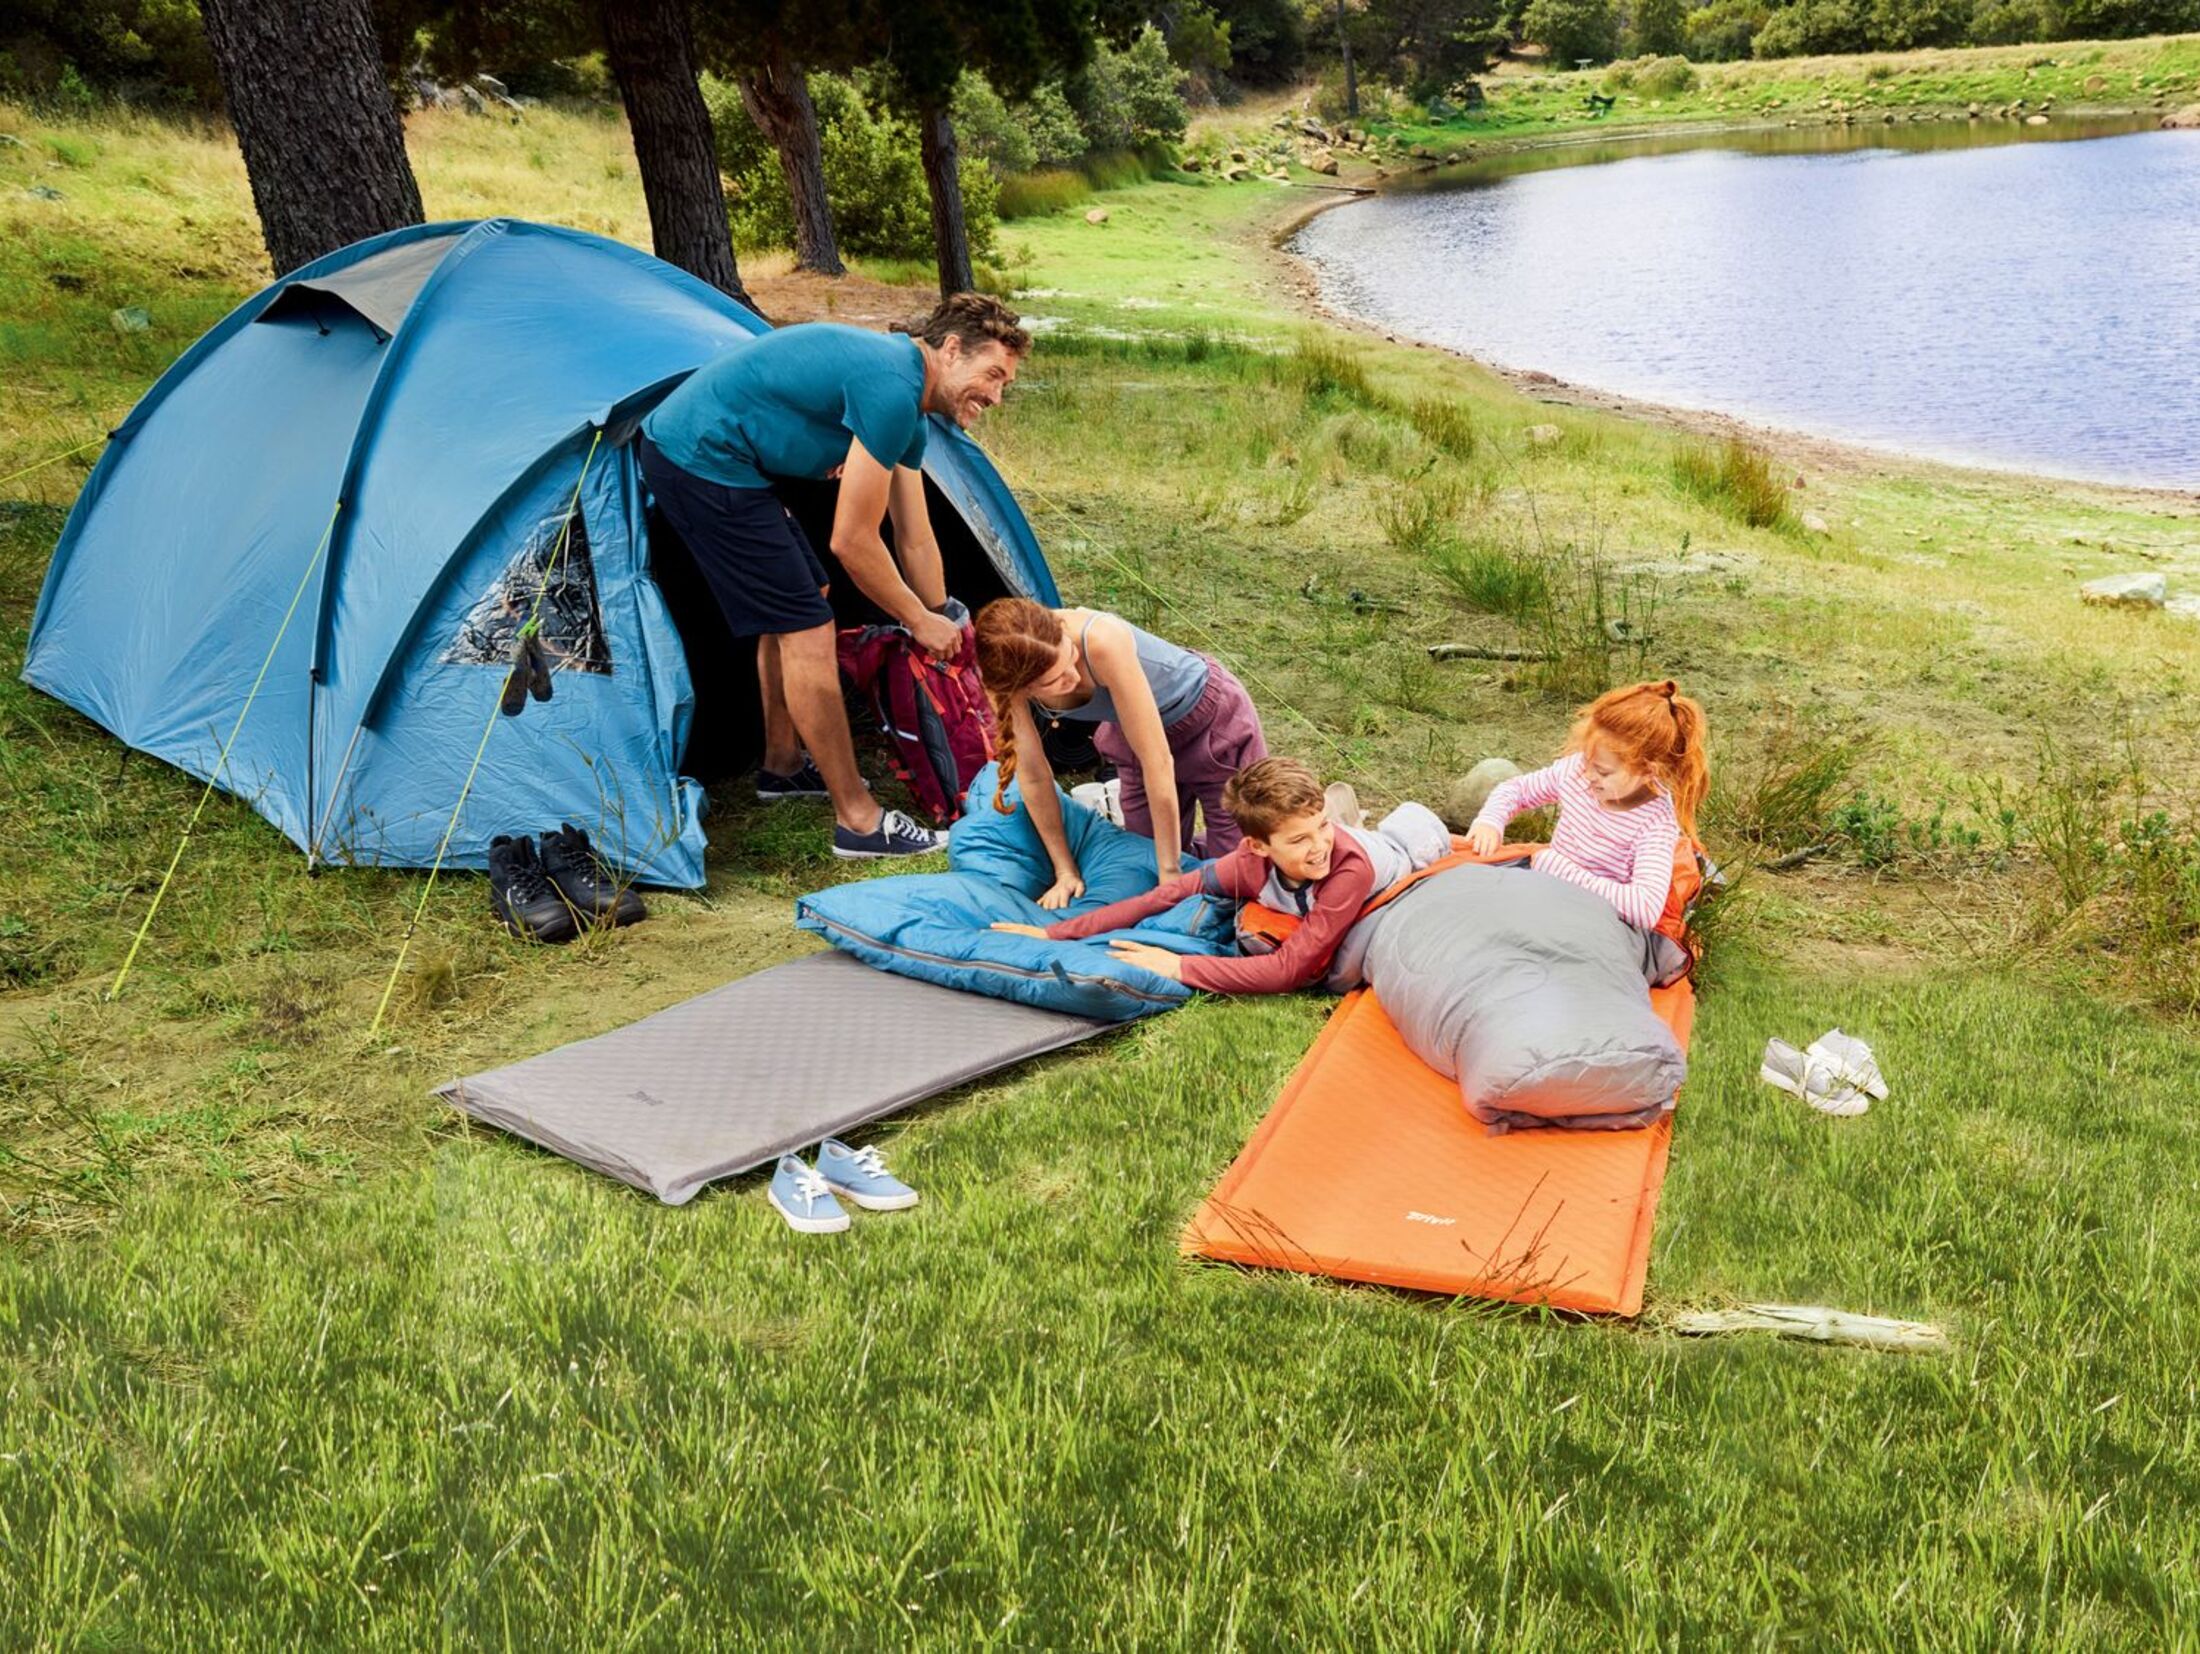 Test: im Discounter-Camping-Ausrüstung? Was kann Billigzelte